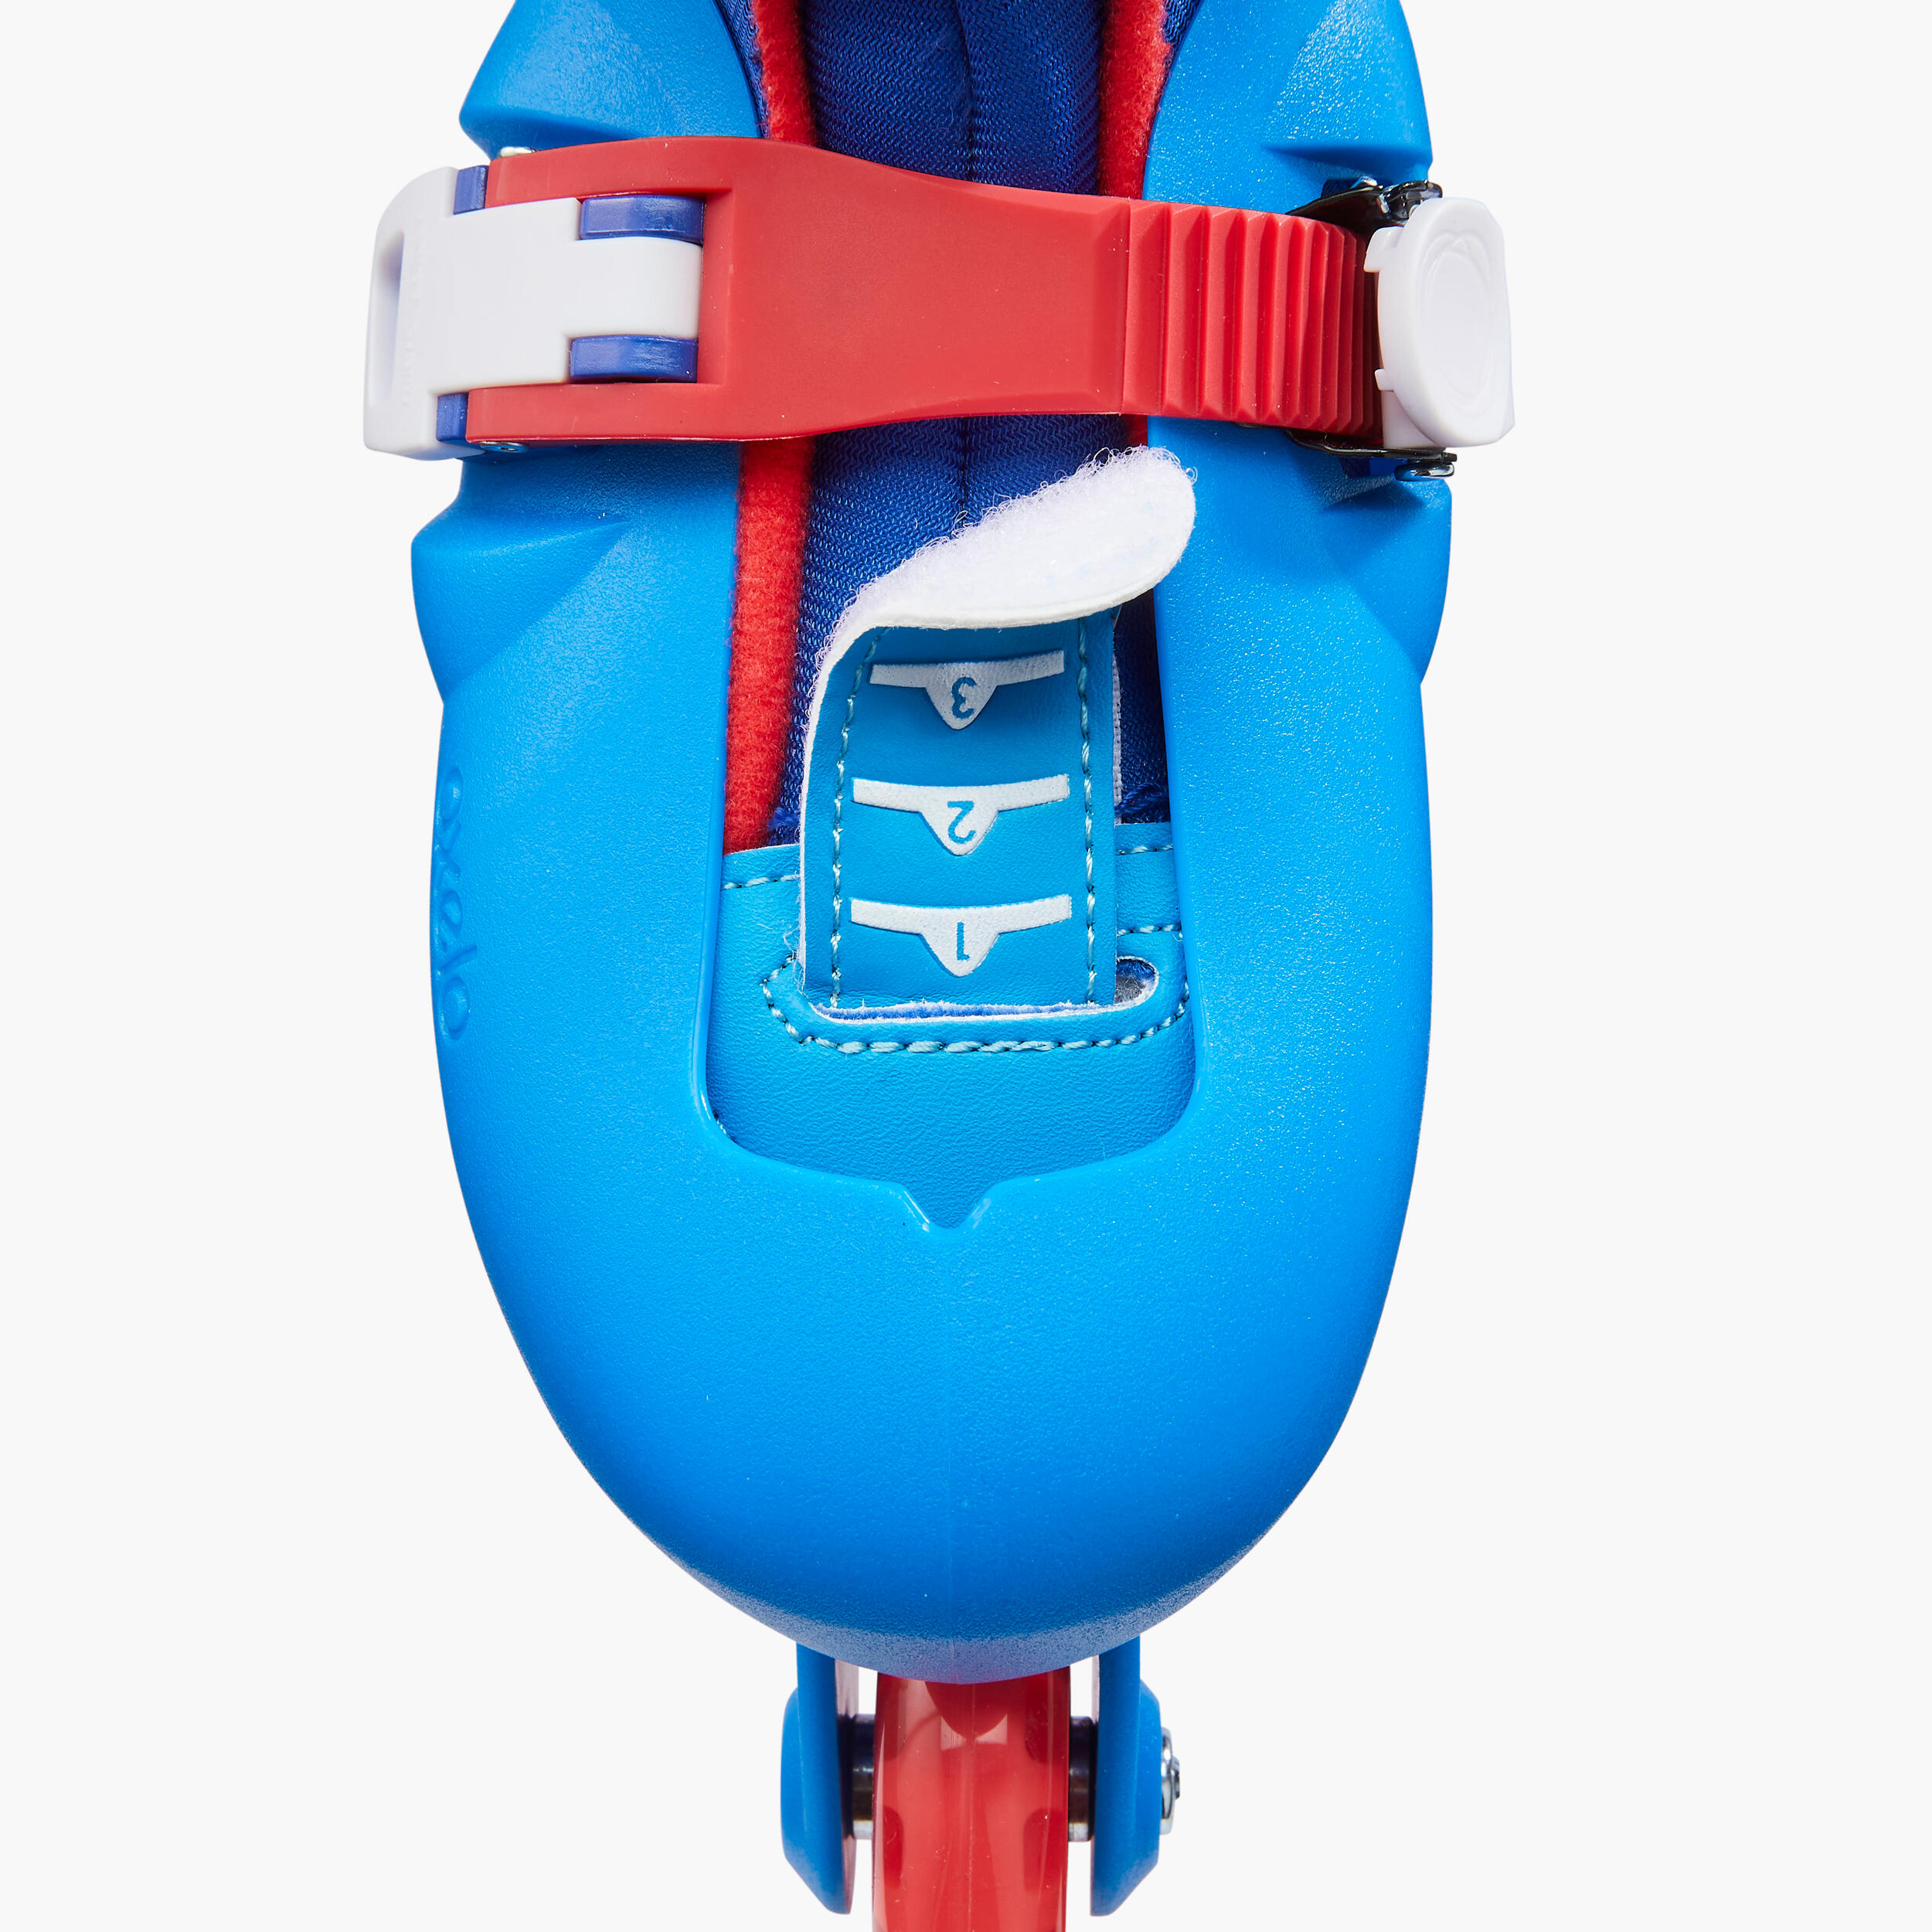 Patins à roues alignées enfant - Play 3 bleu/rouge - OXELO